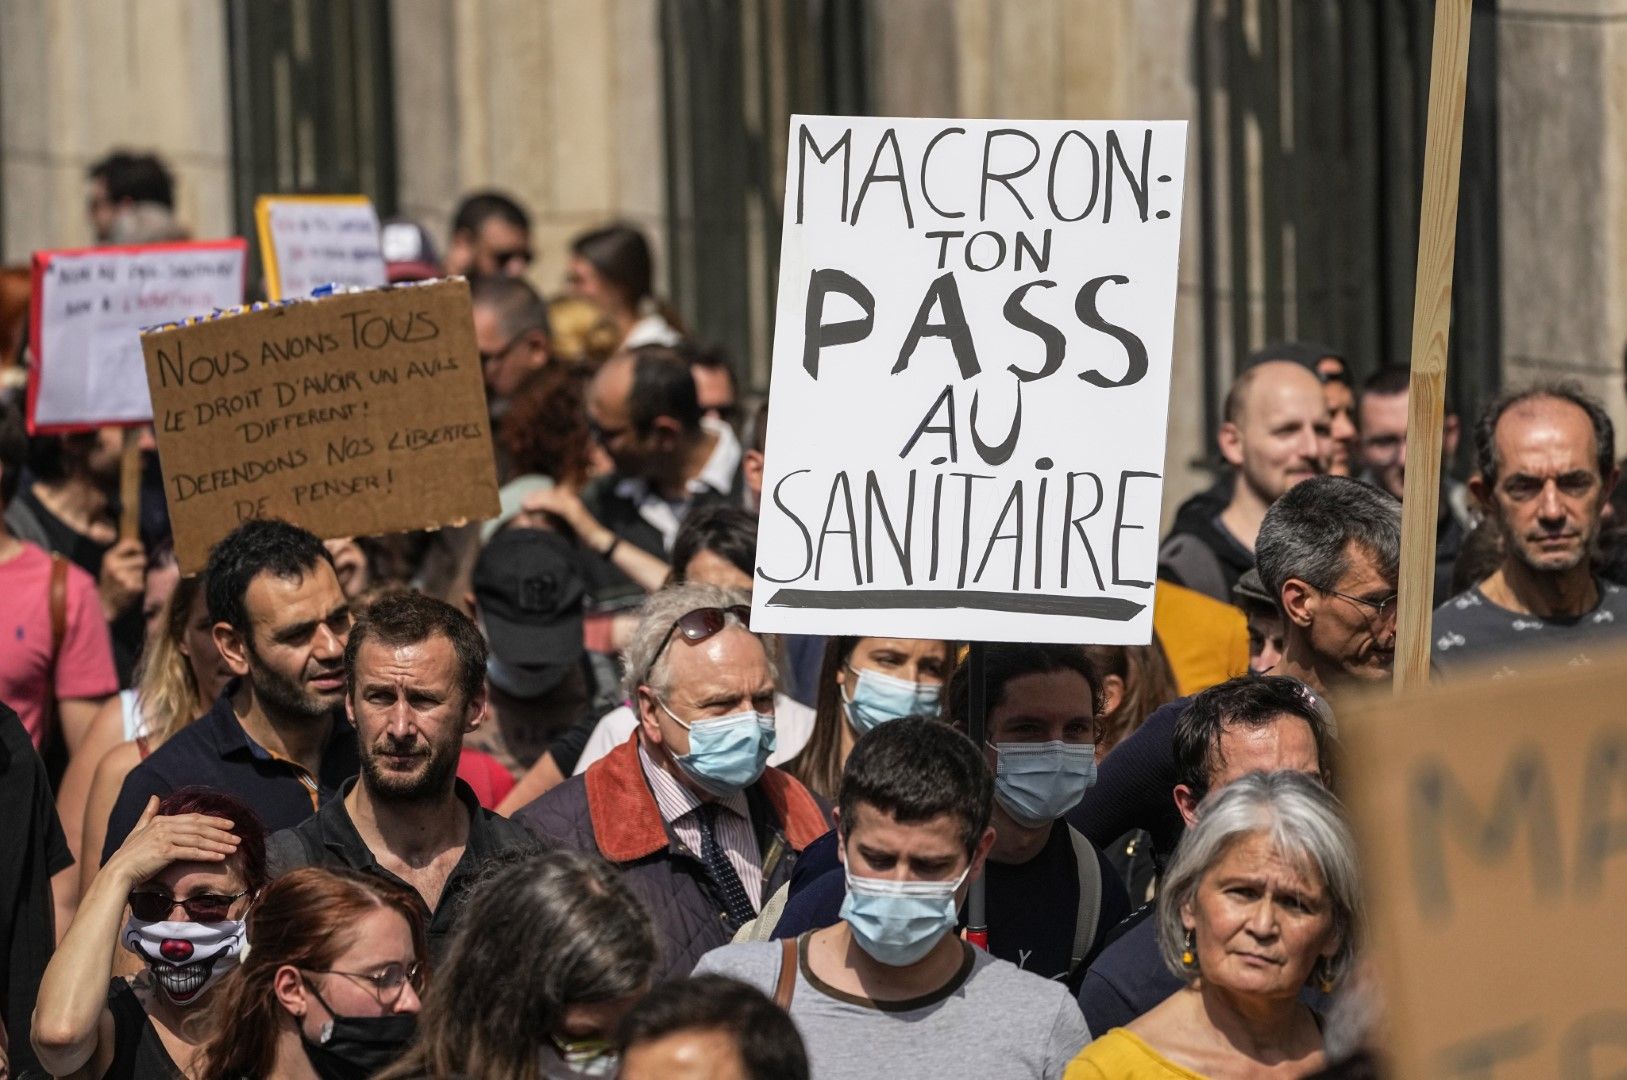 Протестиращи срещу ваксините държат плакат, на който пише: "Макрон, вашият здравен пропуск в тоалетната"